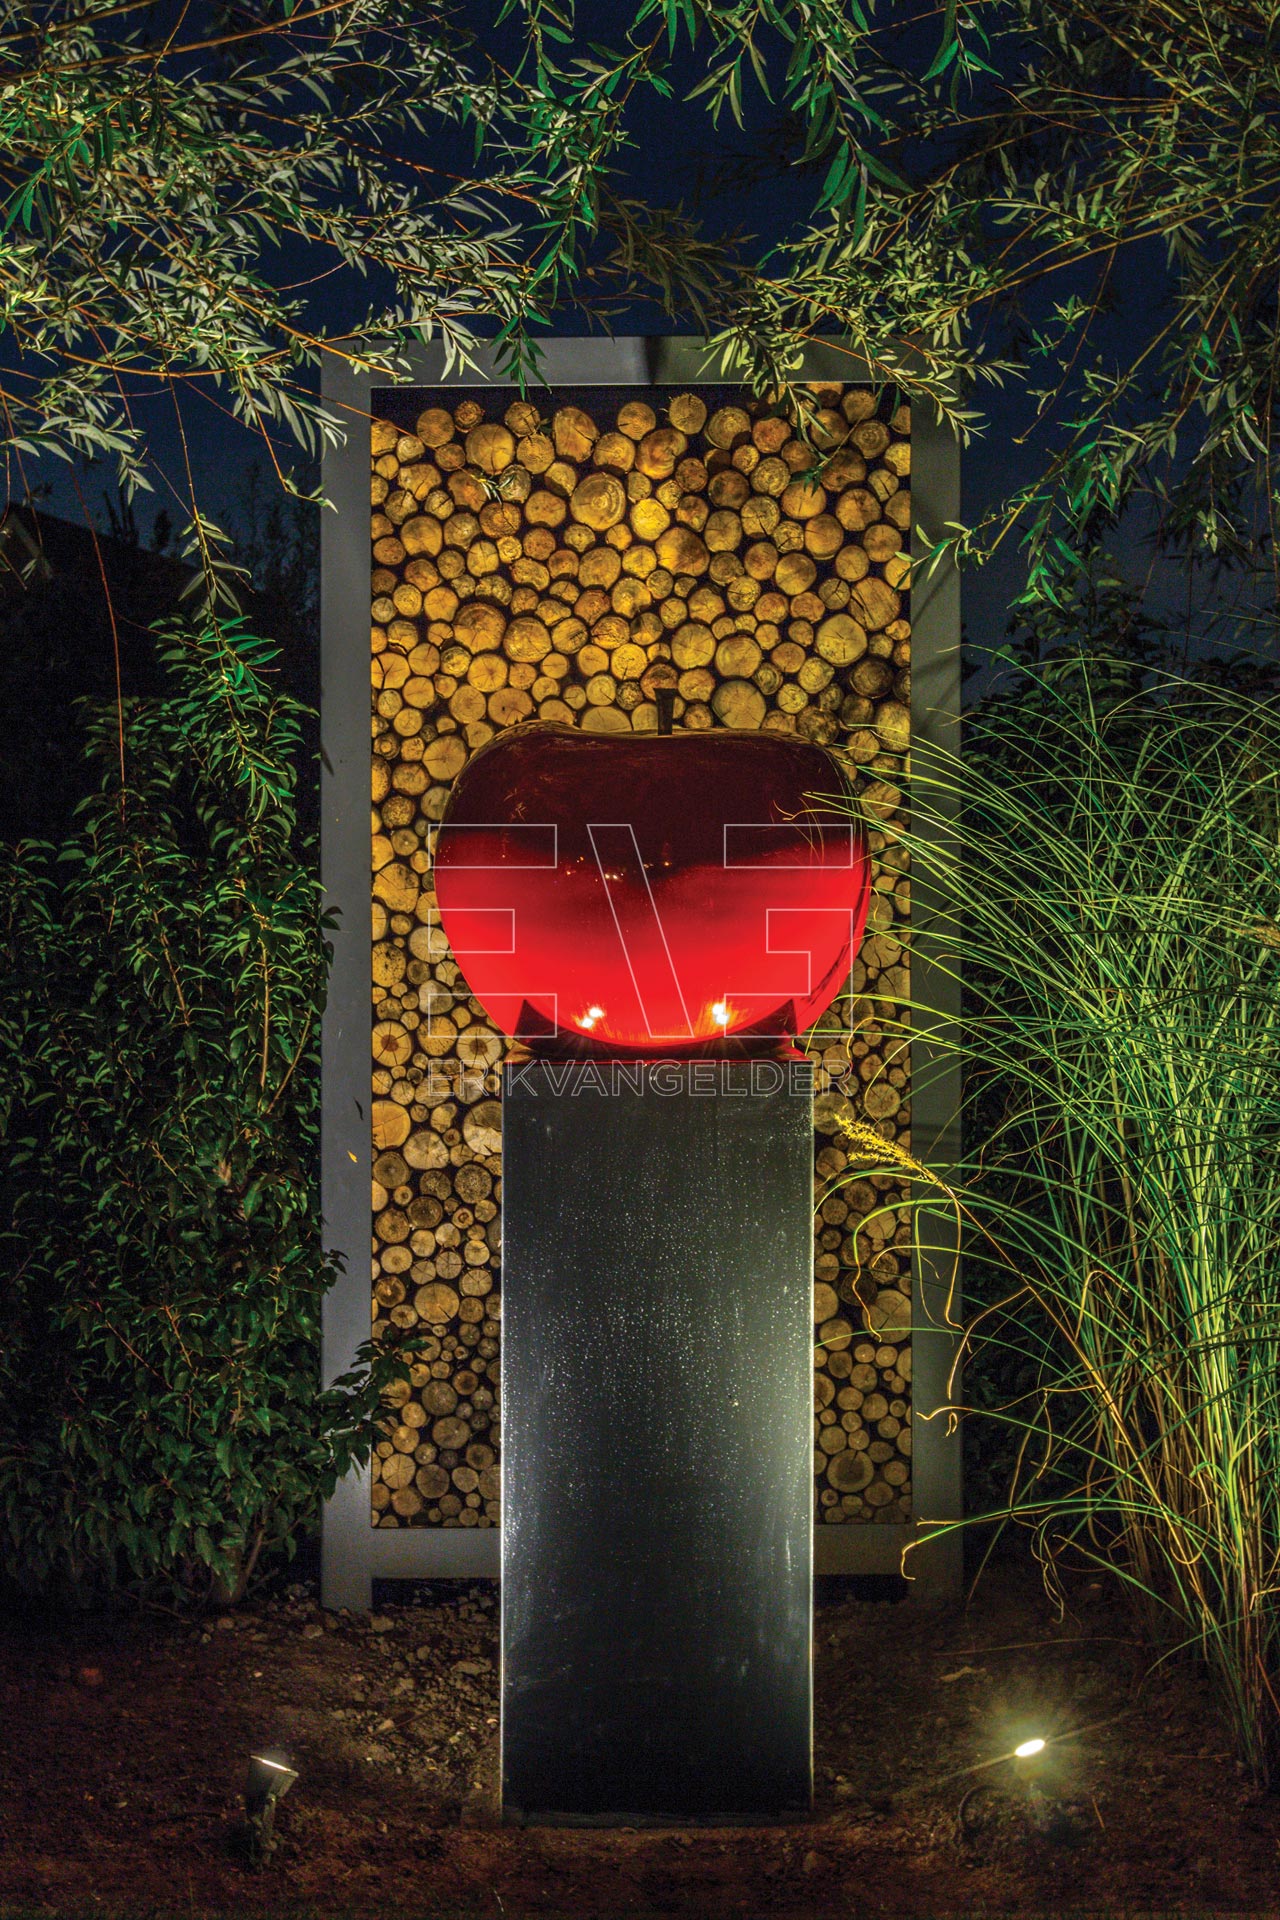 Sfeerbeeld kunst rode appel op sokkel uitgelicht erikvangelder tuinarchitect tuindesign